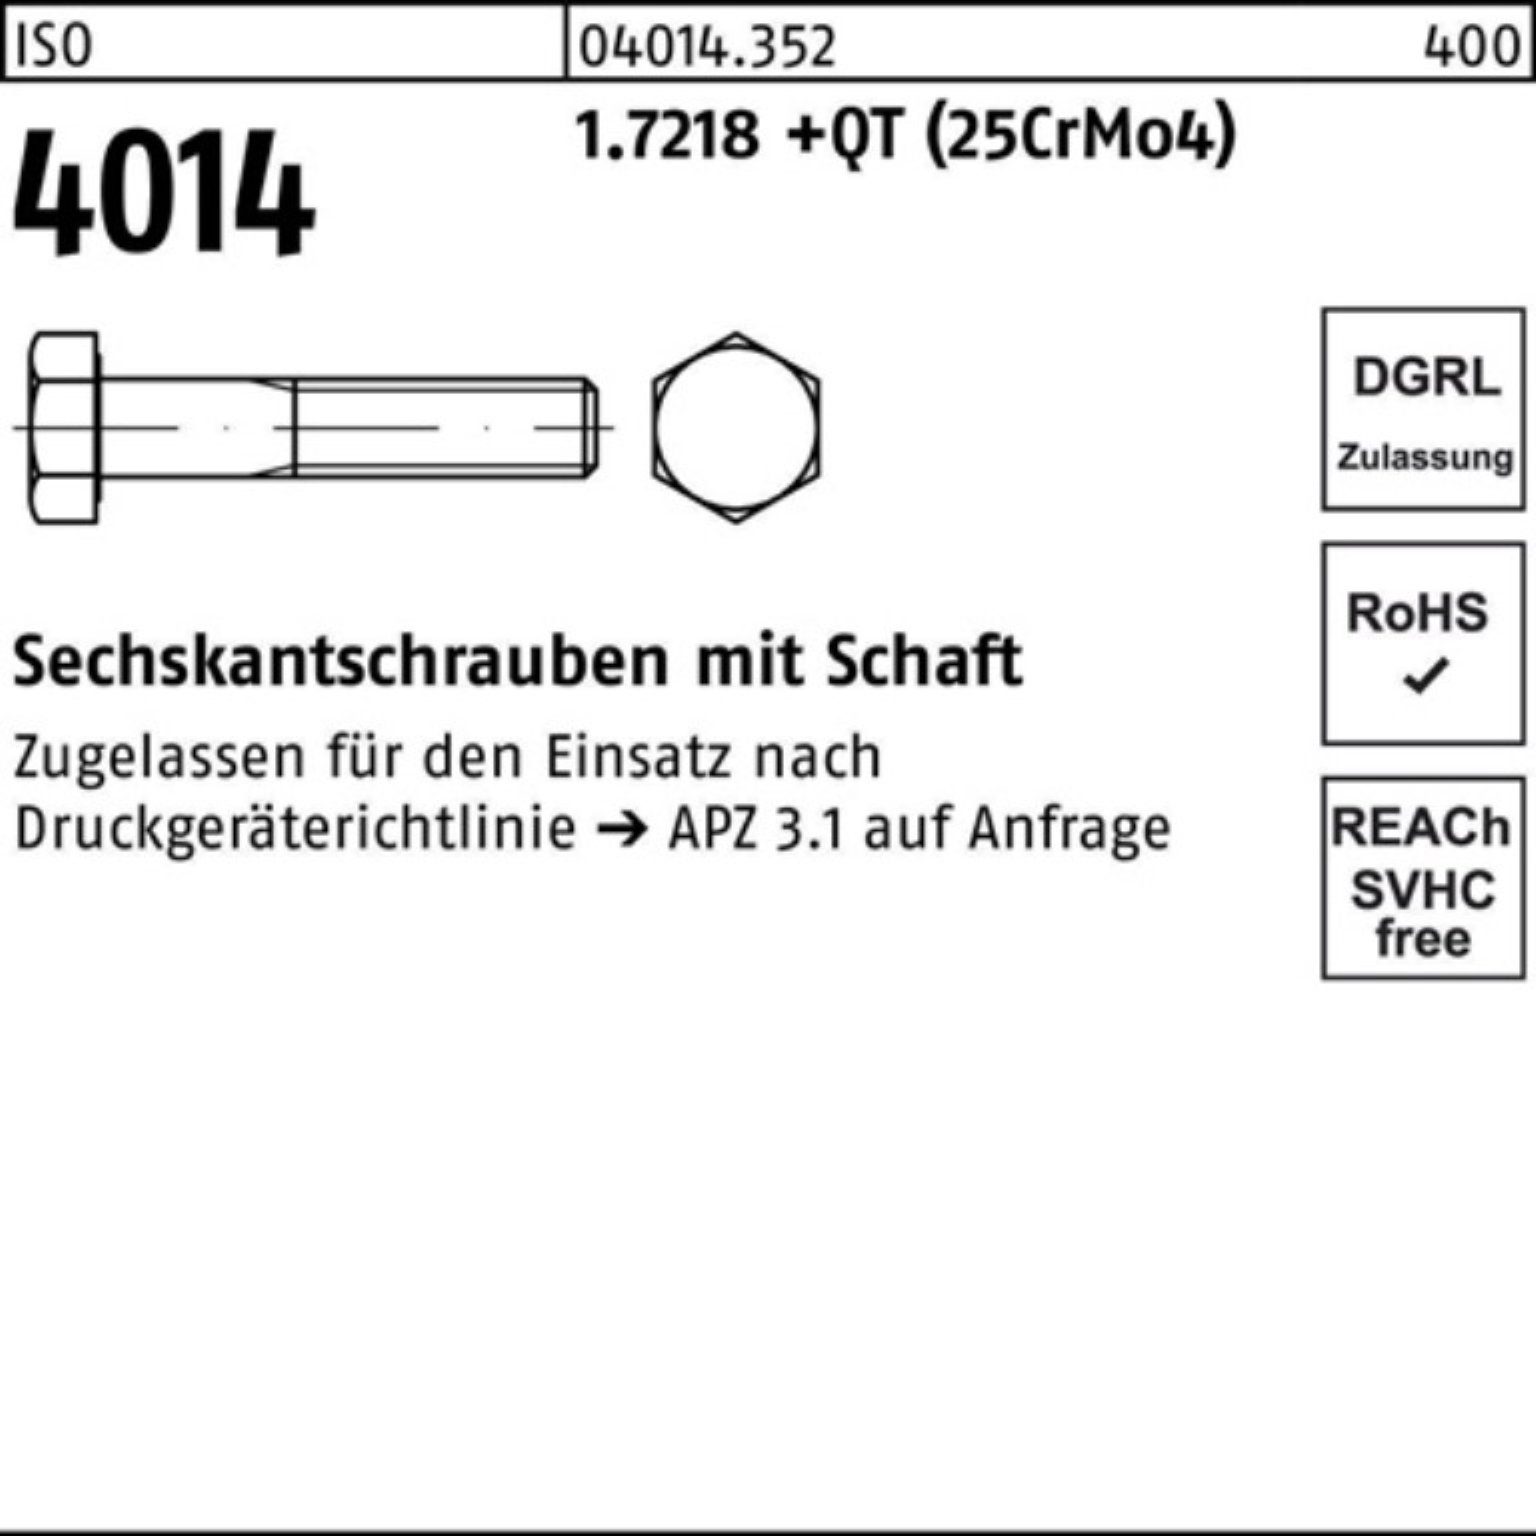 Sechskantschraube 100er Pack 4014 Schaft M39x 150 1.7218 Bufab +QT (25Cr Sechskantschraube ISO